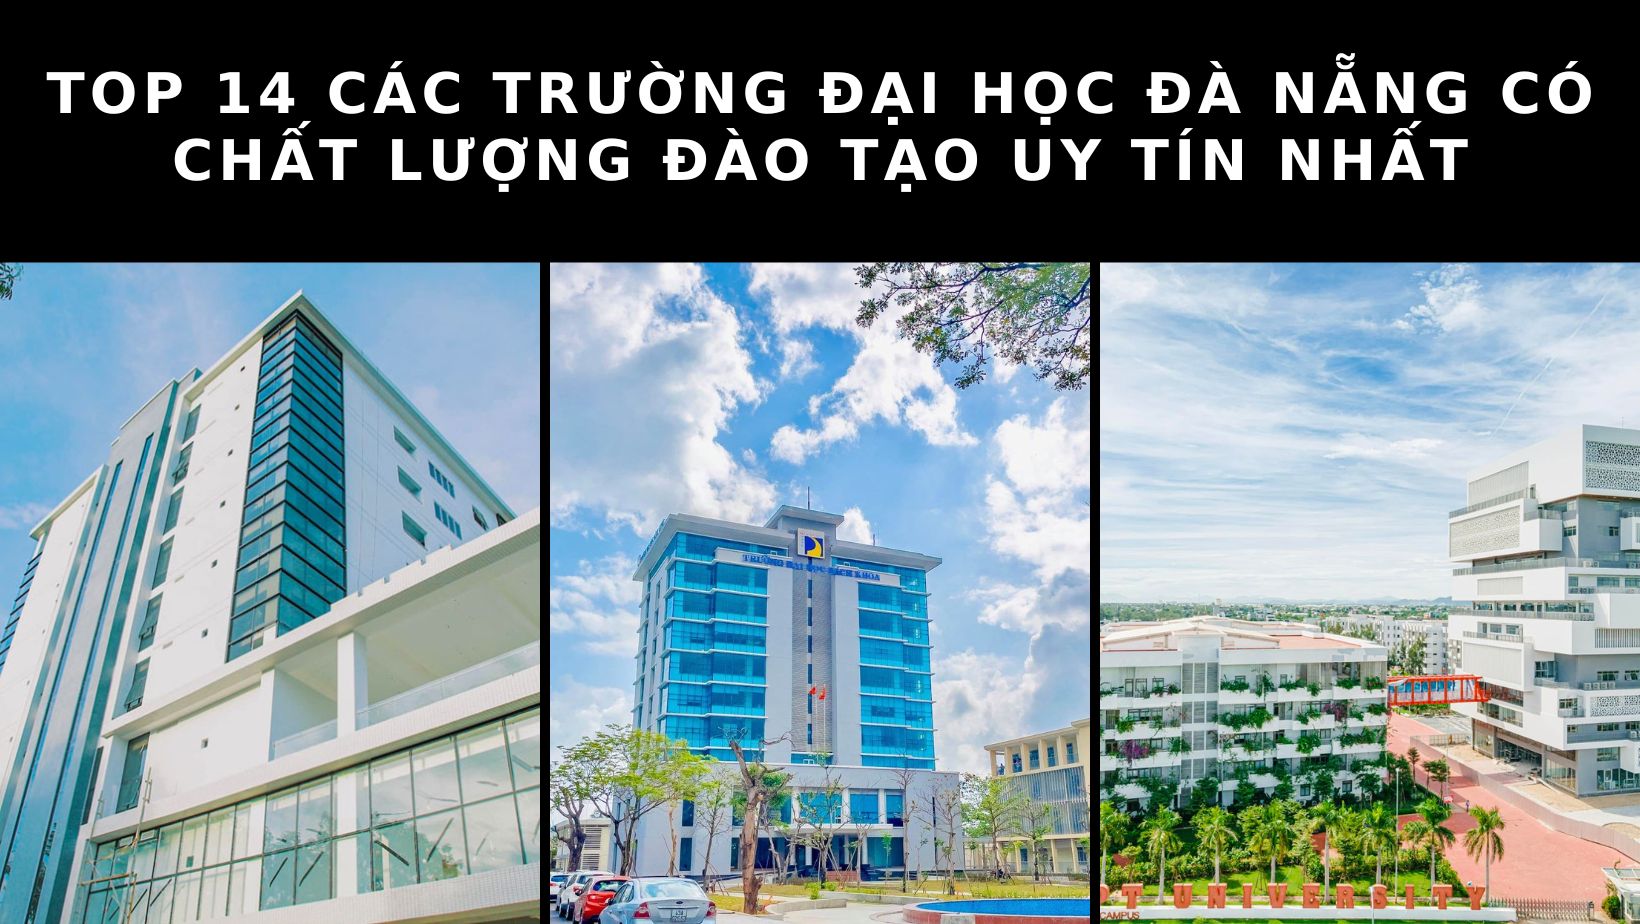 Top 14 các trường đại học Đà Nẵng đạt chuẩn chất lượng đào tạo hàng đầu